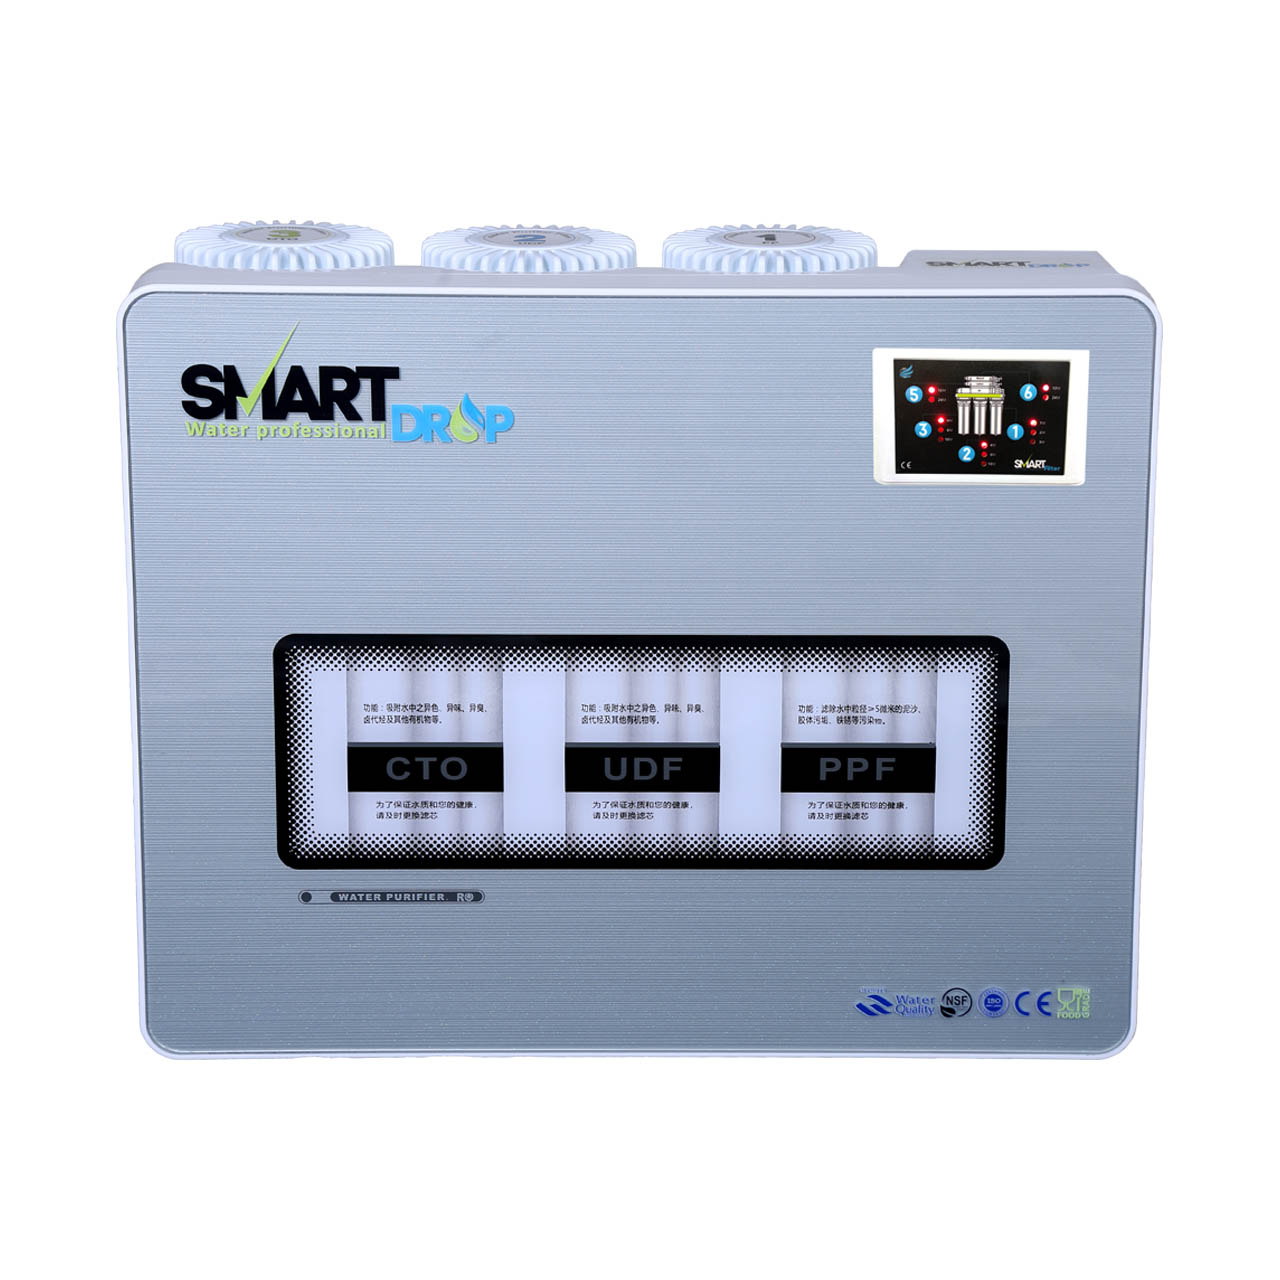 دستگاه تصفیه آب اسمارت دراپ مدل SD_RO6_CASE03 